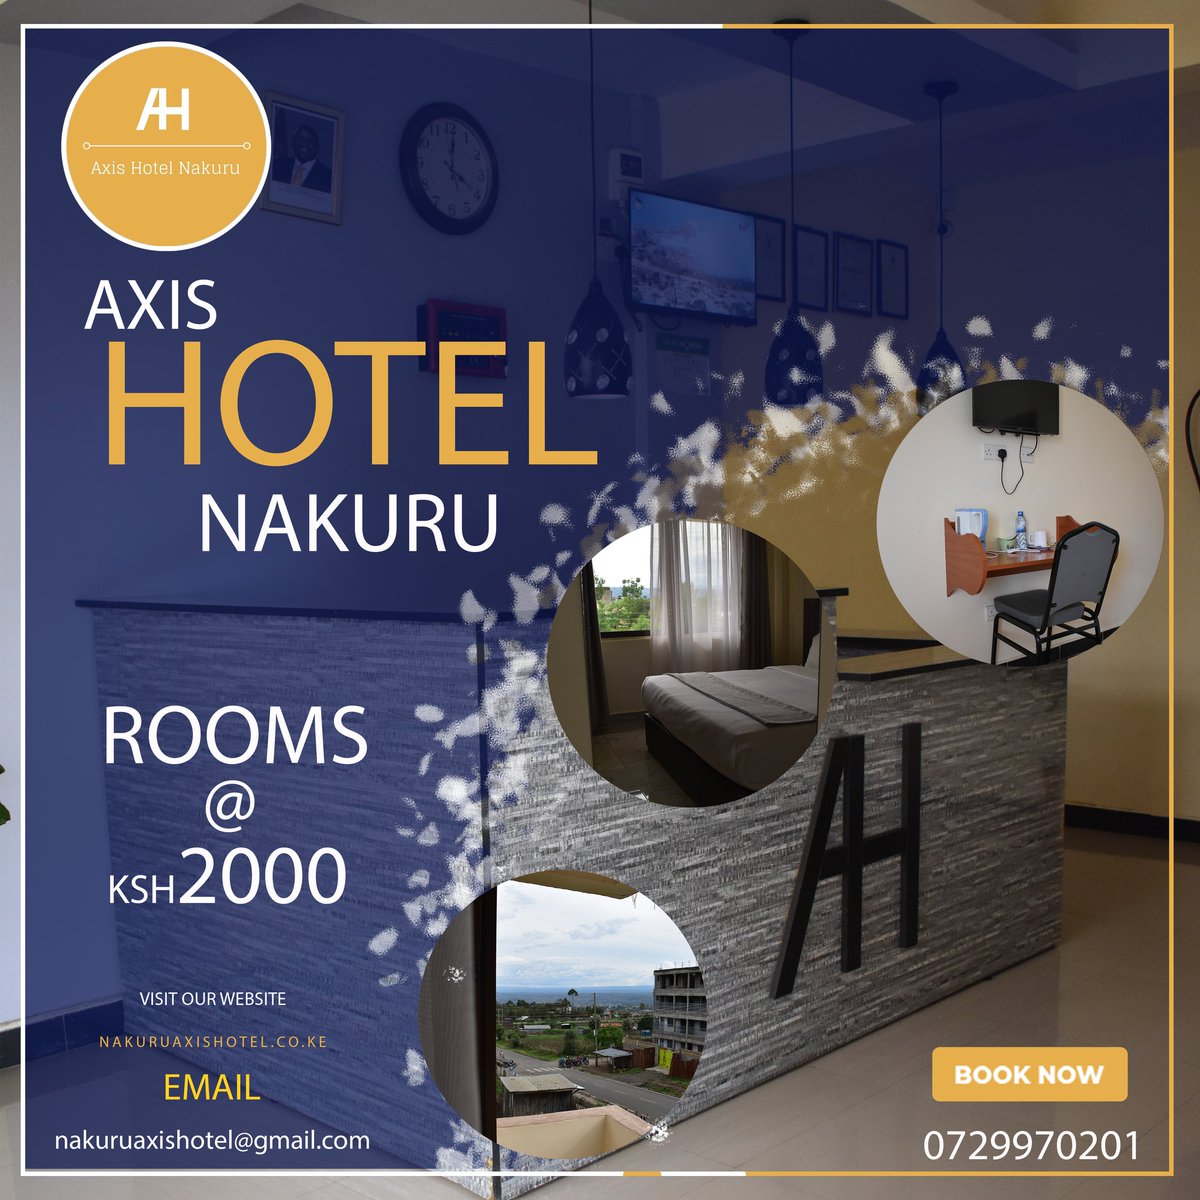 'Unwind in Luxury at Axis Hotel Nakuru. ✨ #AxisHotelNakuru #LuxuryGetaway #NakuruVibes #TravelGoals #HotelLife #VacationMode #Staycation #RelaxationStation #TravelKenya #ExploreNakuru #LuxuryAccommodation #InstaTravel #Wanderlust #Travelgram #HotelStay #Hospitality #TravelKenya